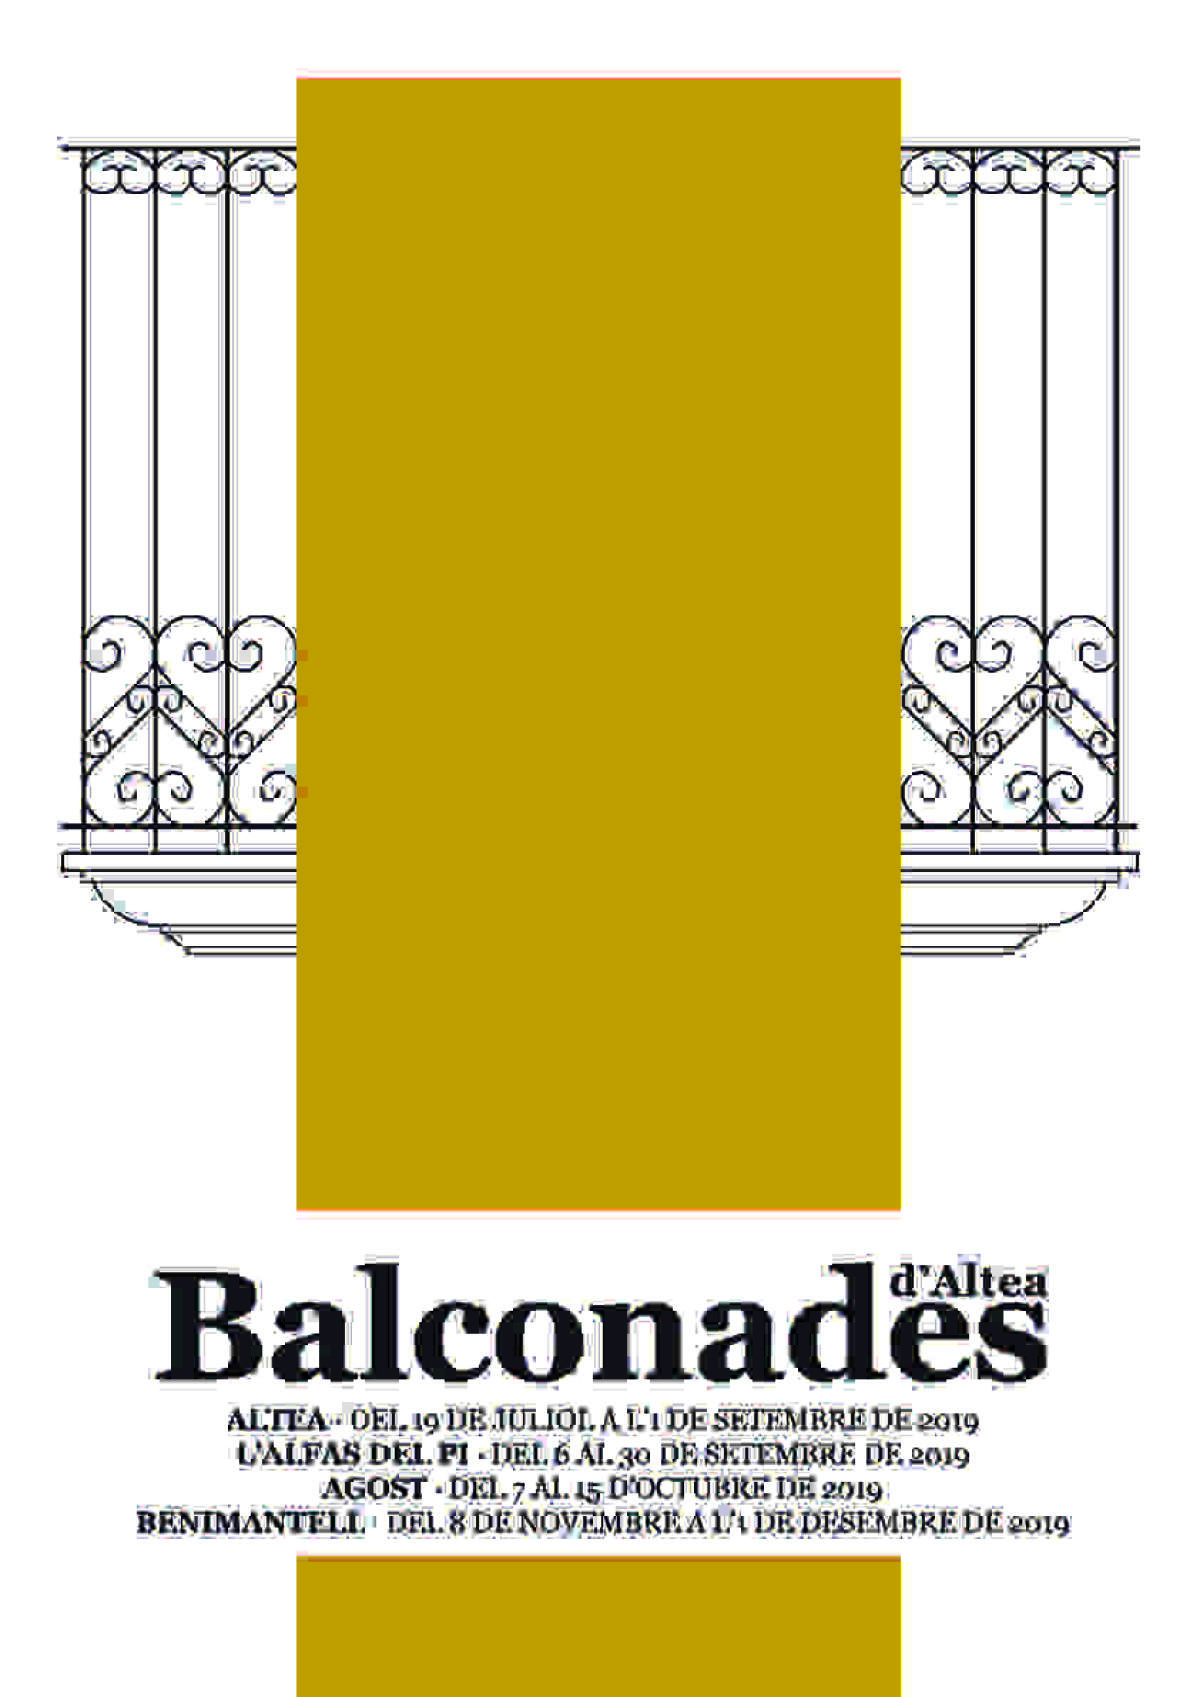 Balconades y Xicotet Format llenan de arte el Casco Antiguo de Altea